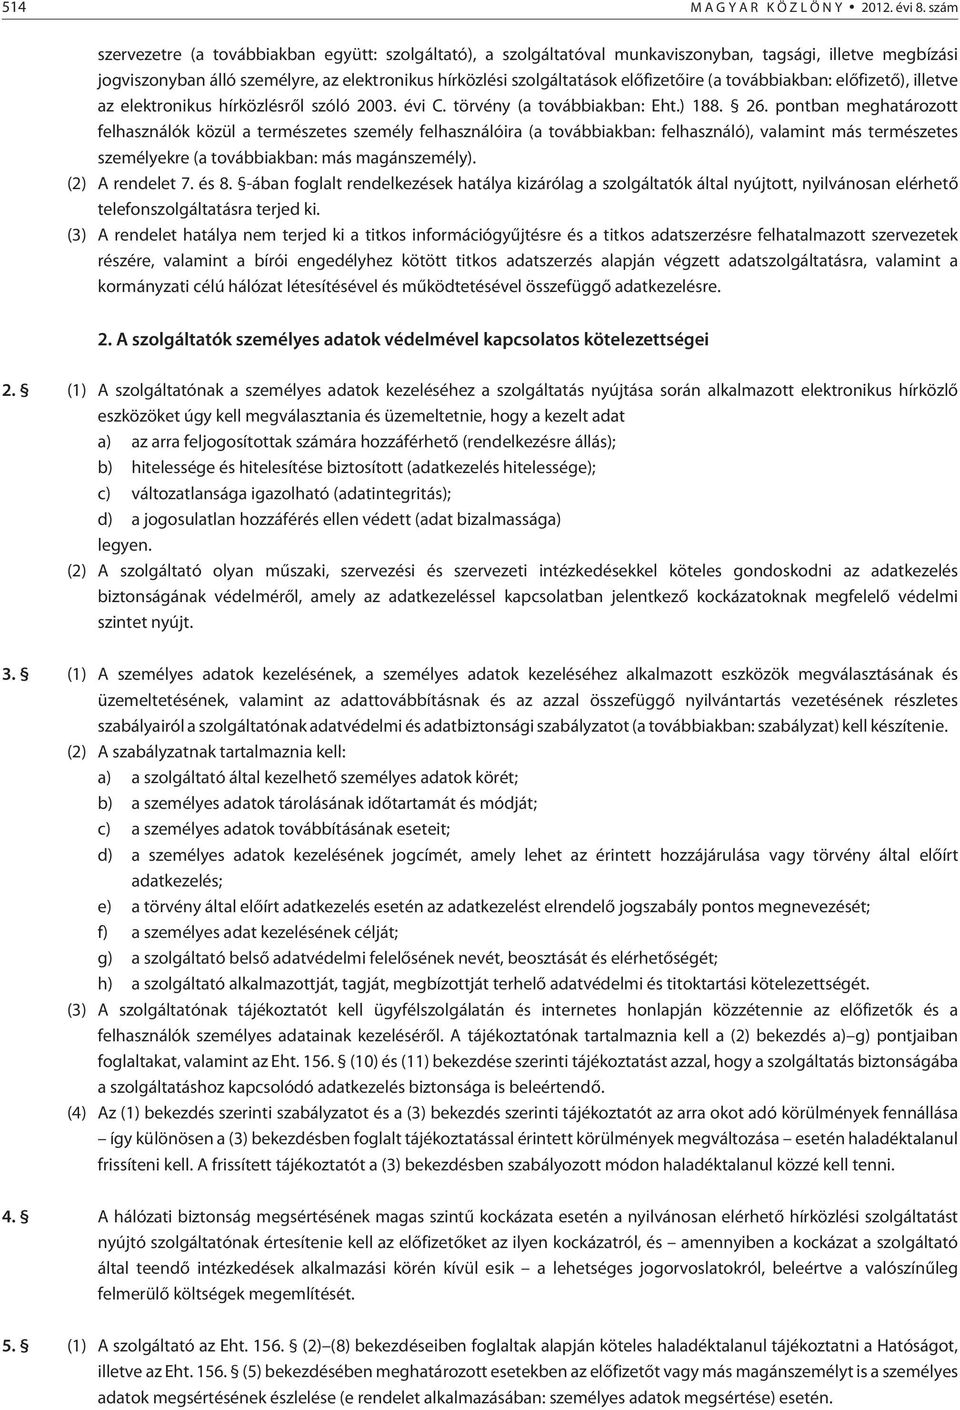 elõfizetõire (a továbbiakban: elõfizetõ), illetve az elektronikus hírközlésrõl szóló 2003. évi C. törvény (a továbbiakban: Eht.) 188. 26.